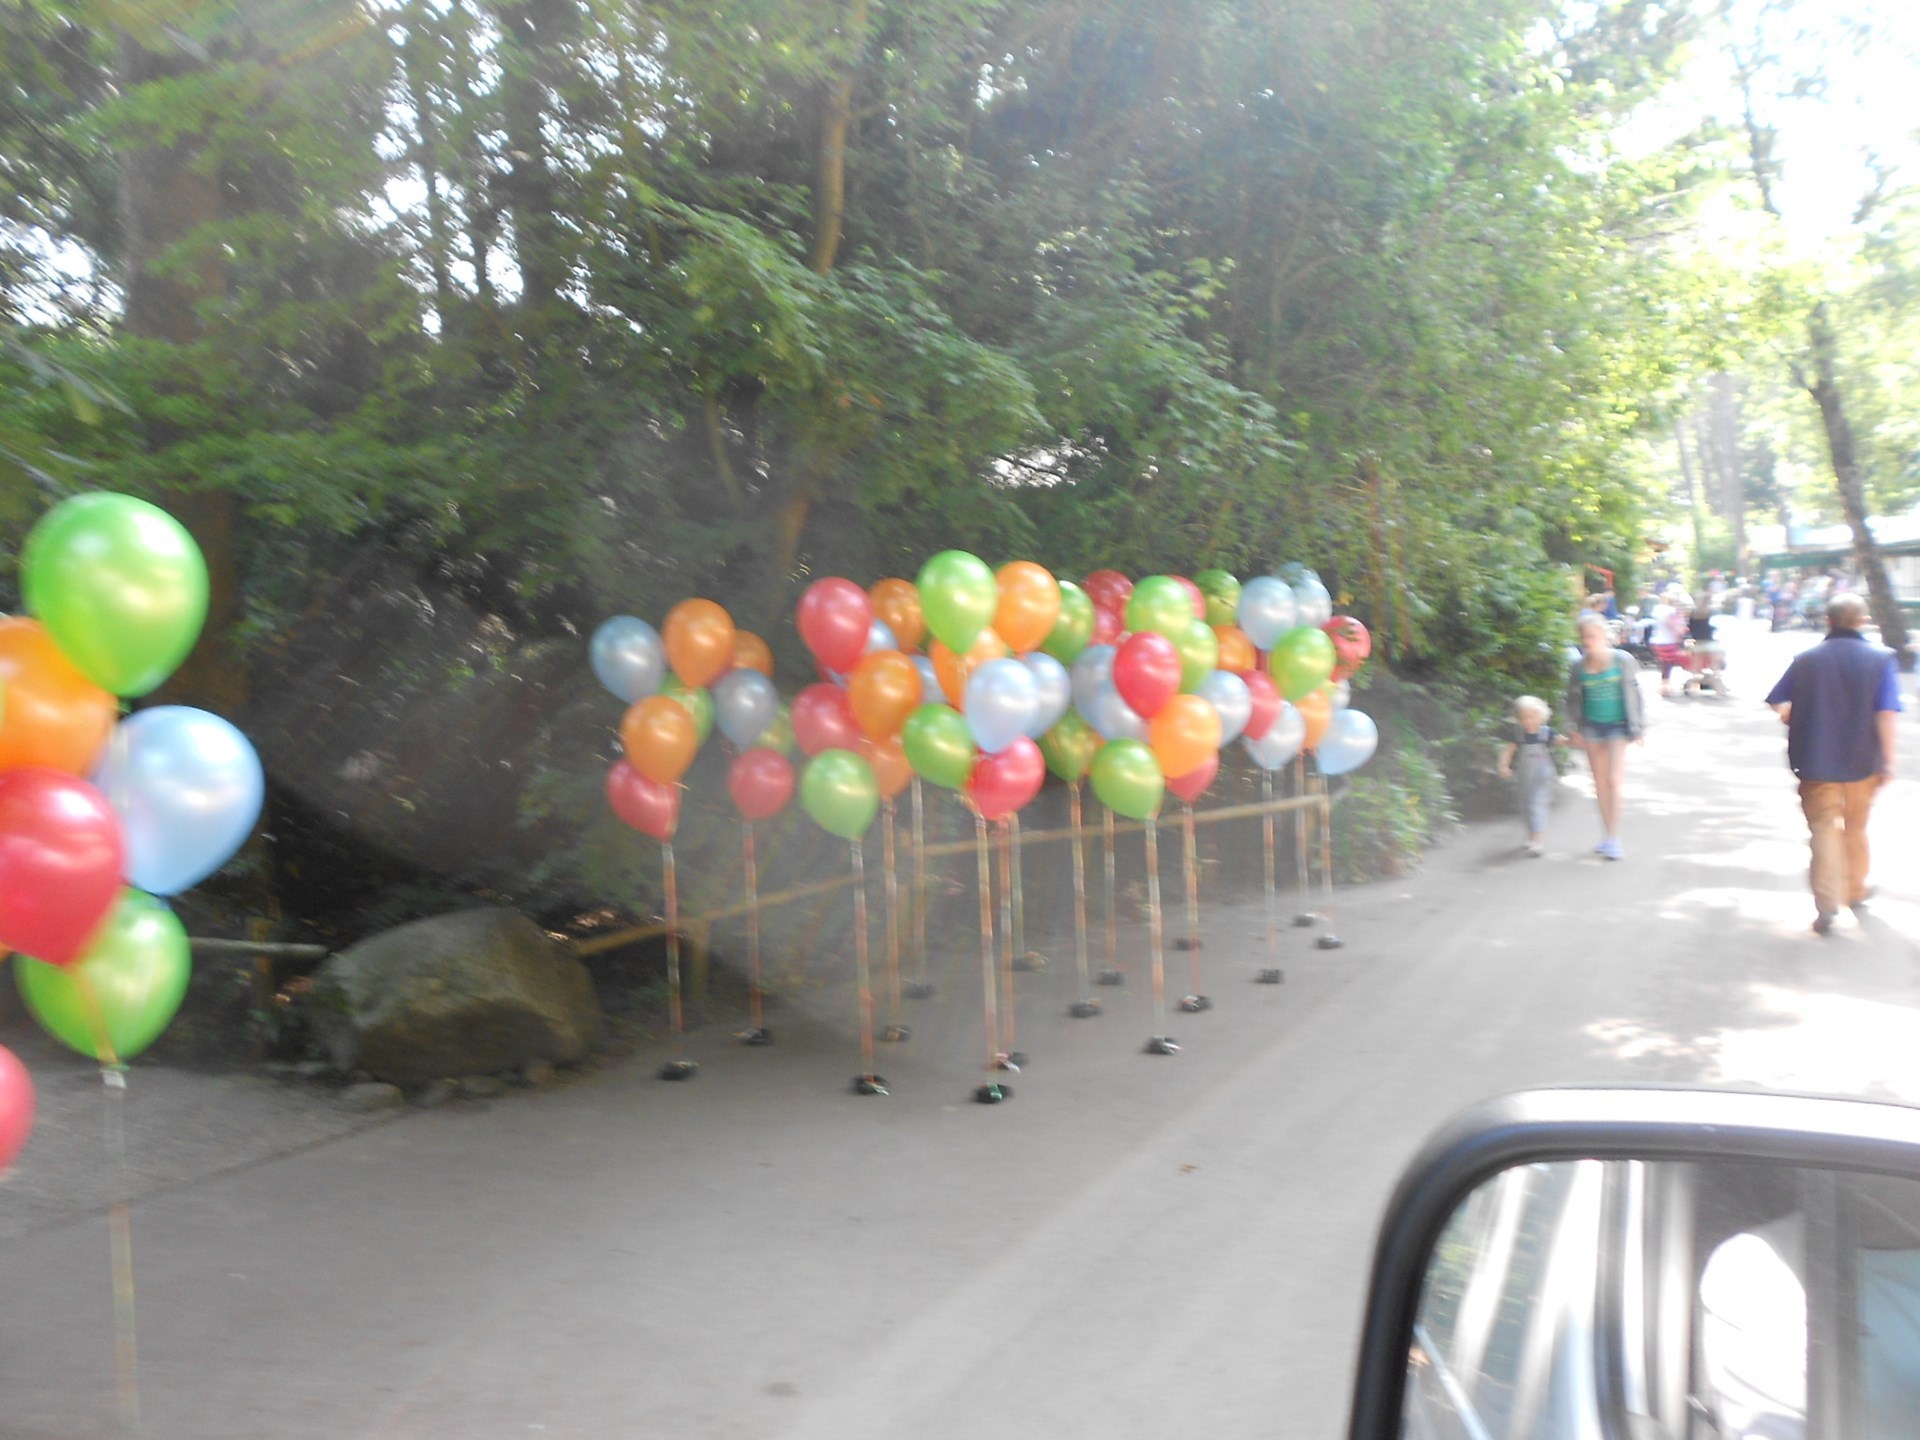 helium ballonnen decoraties in dierenpark Amersfoort evenement